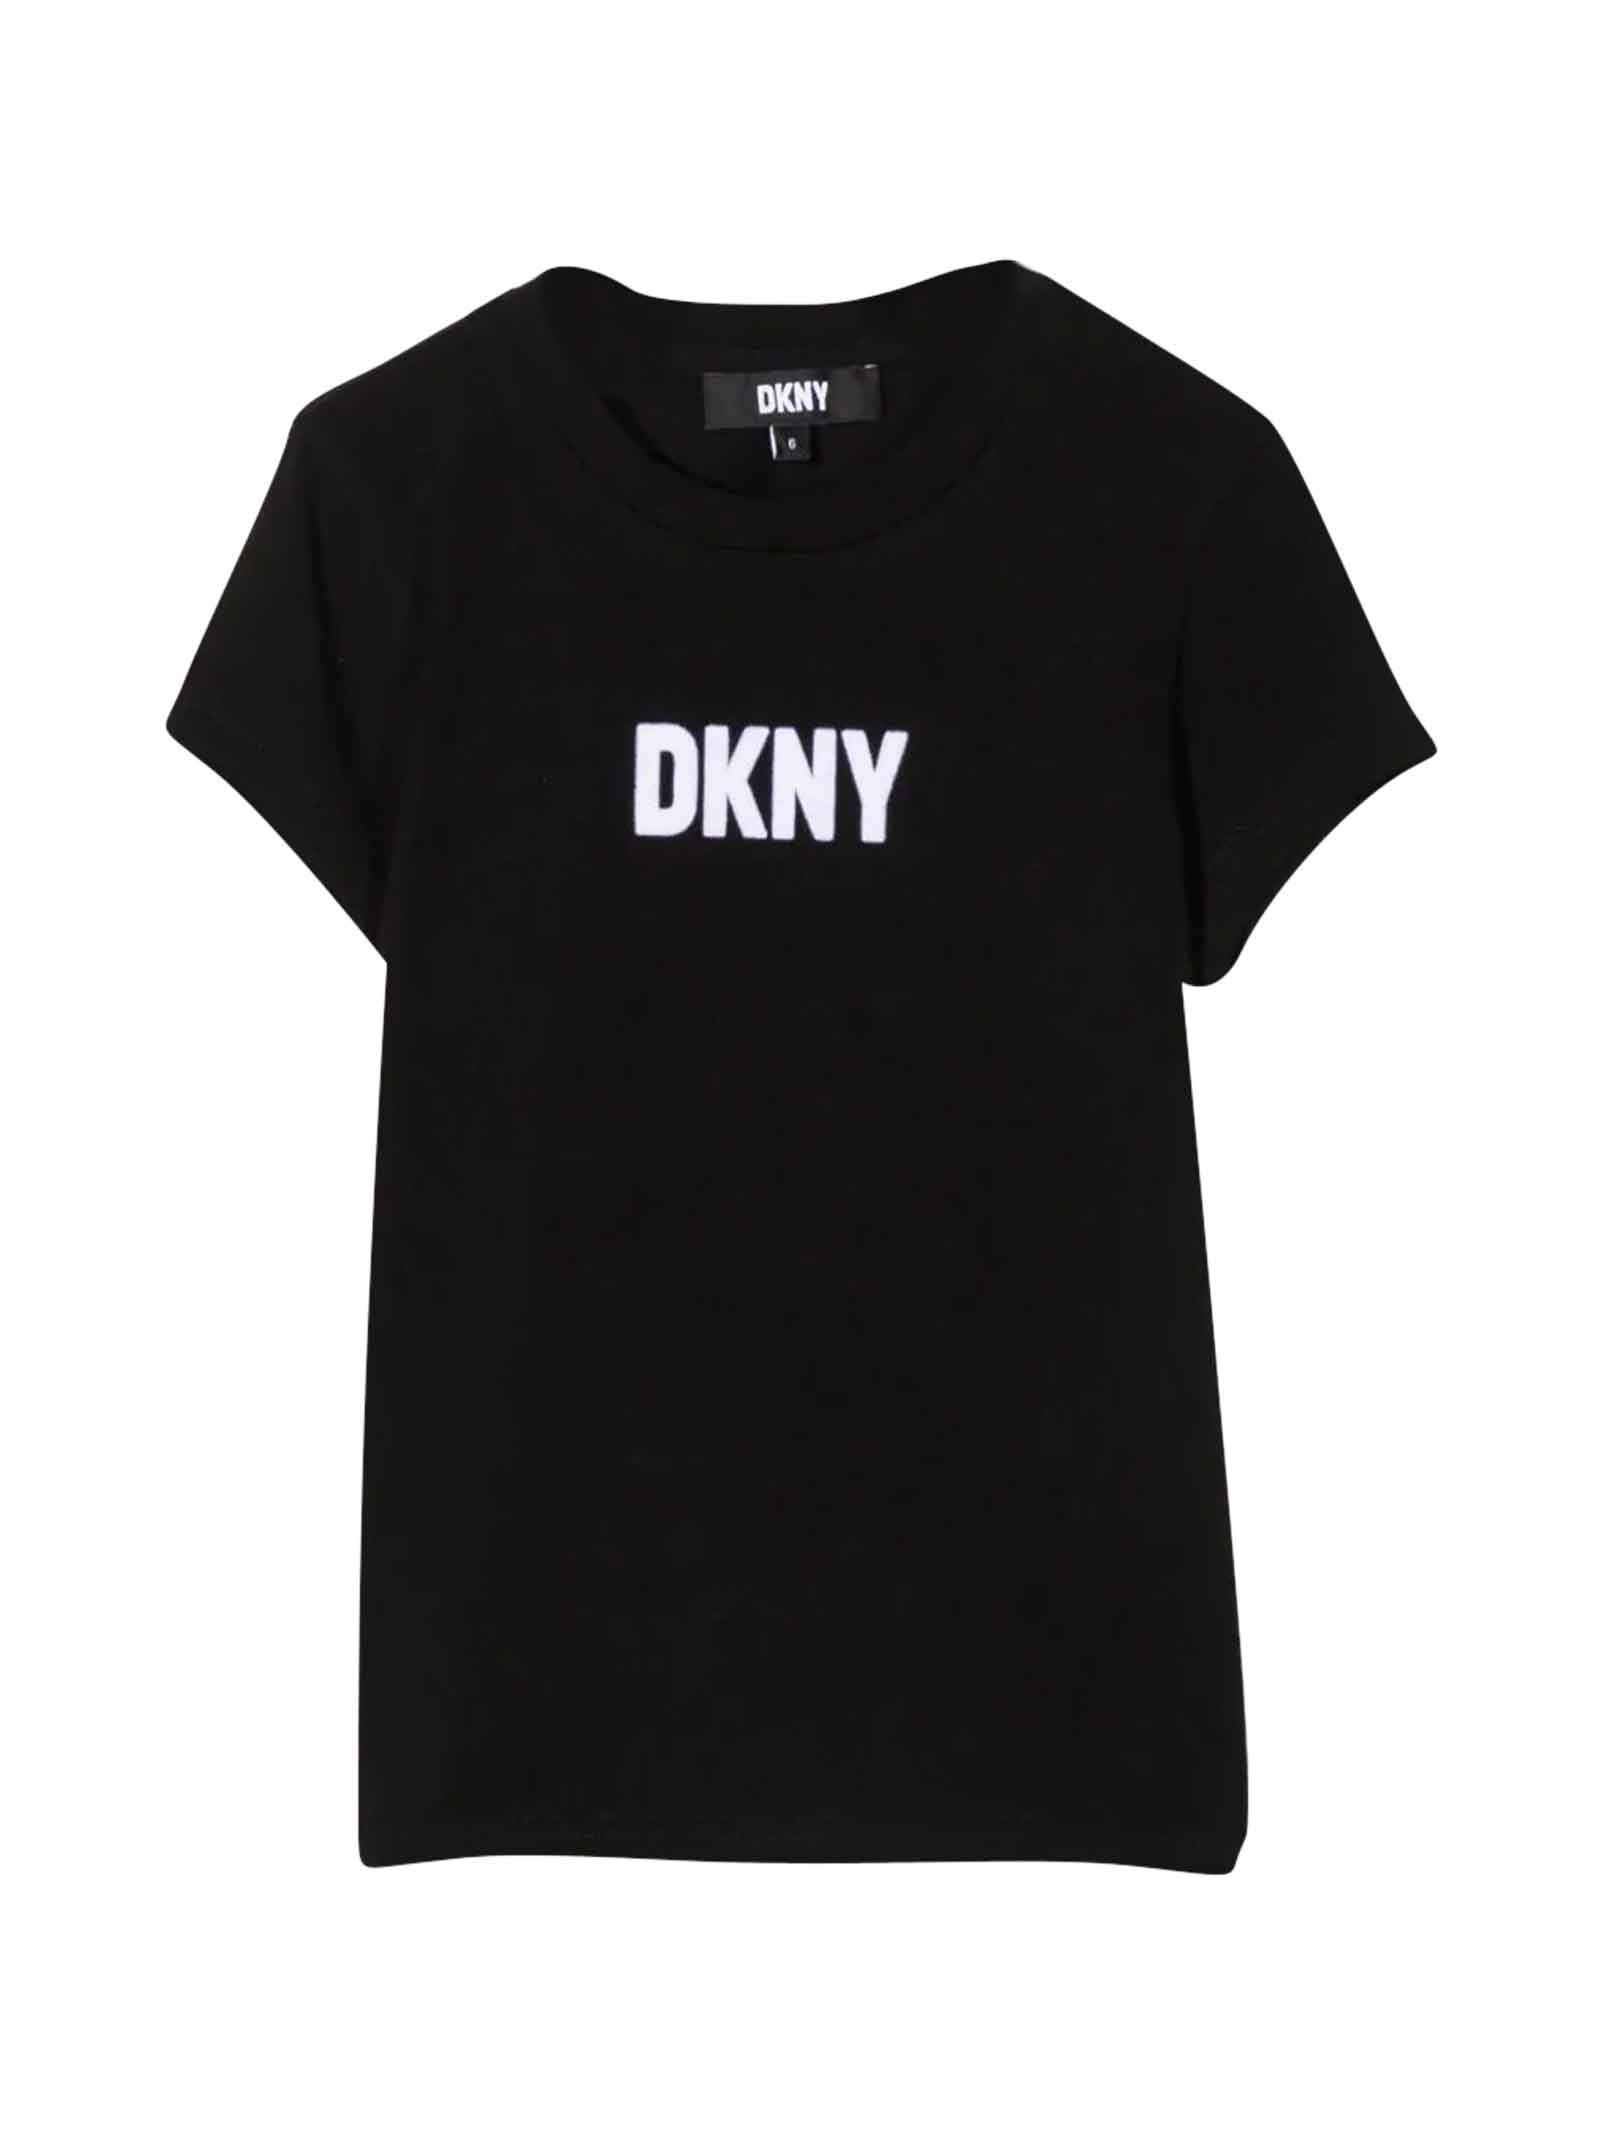 DKNY Black T-shirt Girl